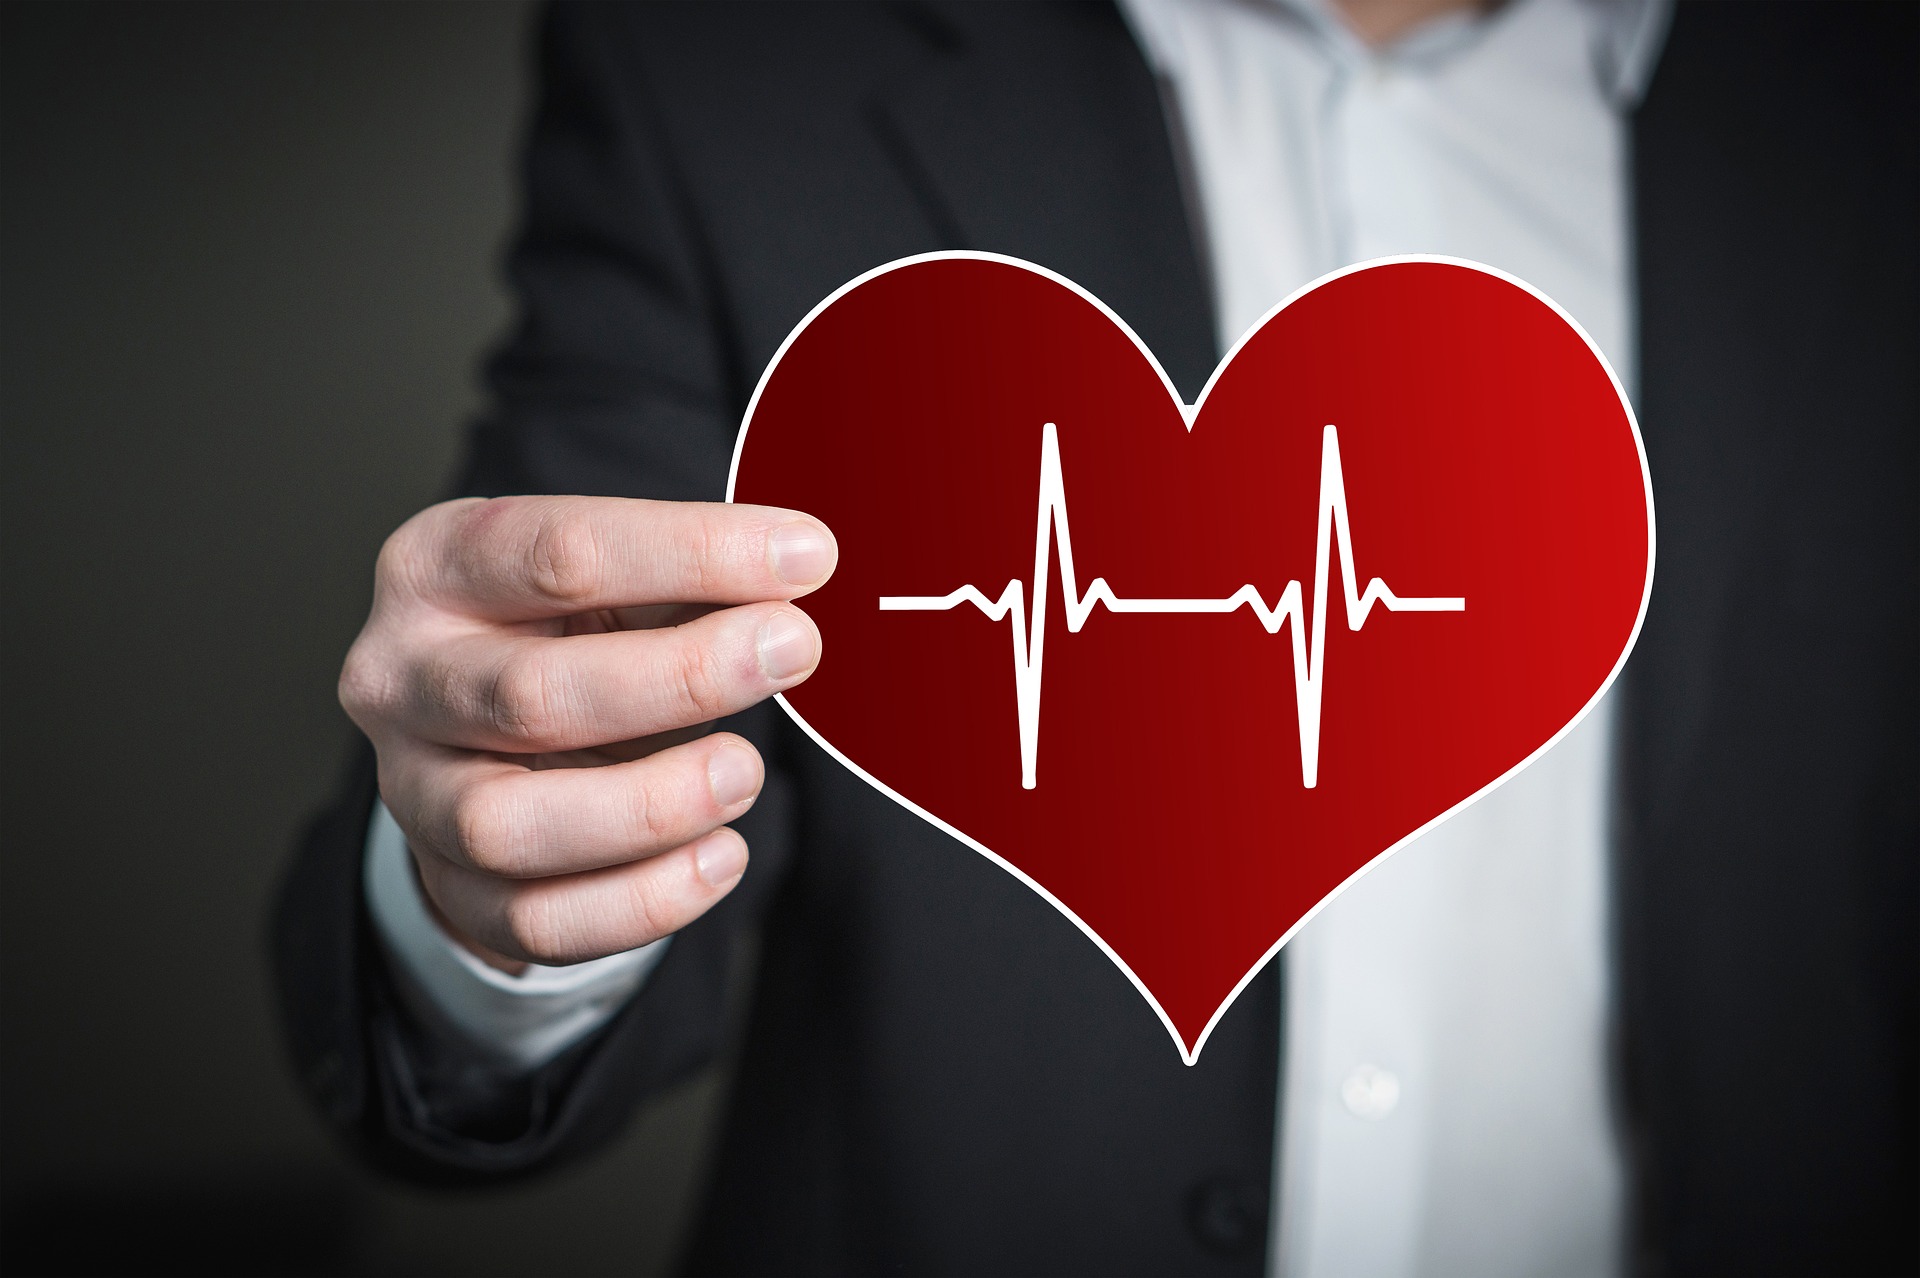 szív-egészségügyi inaktivitás braunwalds szívbetegség 9. kiadás fejezetek egészség